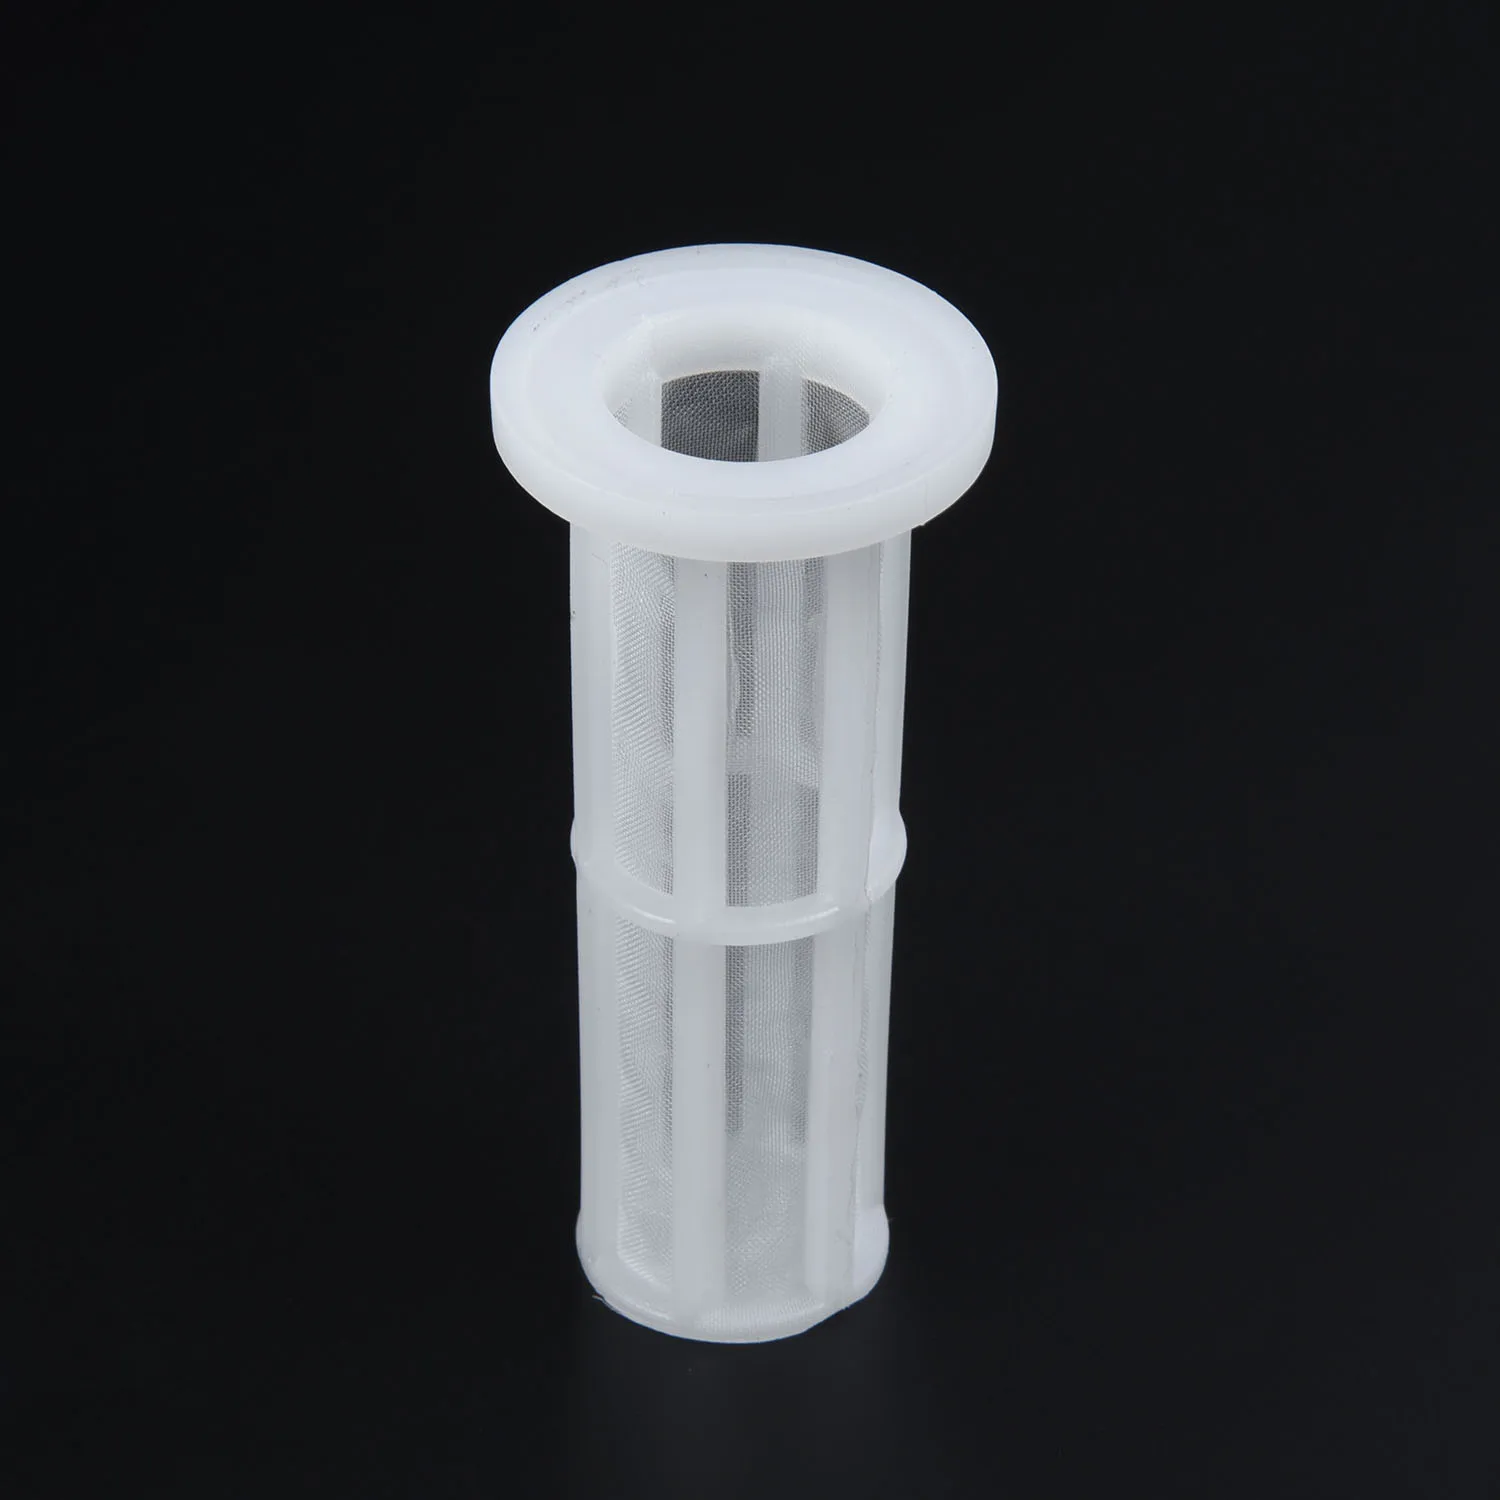 Сменный фильтр для воды для Karcher K2-K7 фильтр высокого давления прозрачный пластиковый аксессуар комплект высокого качества